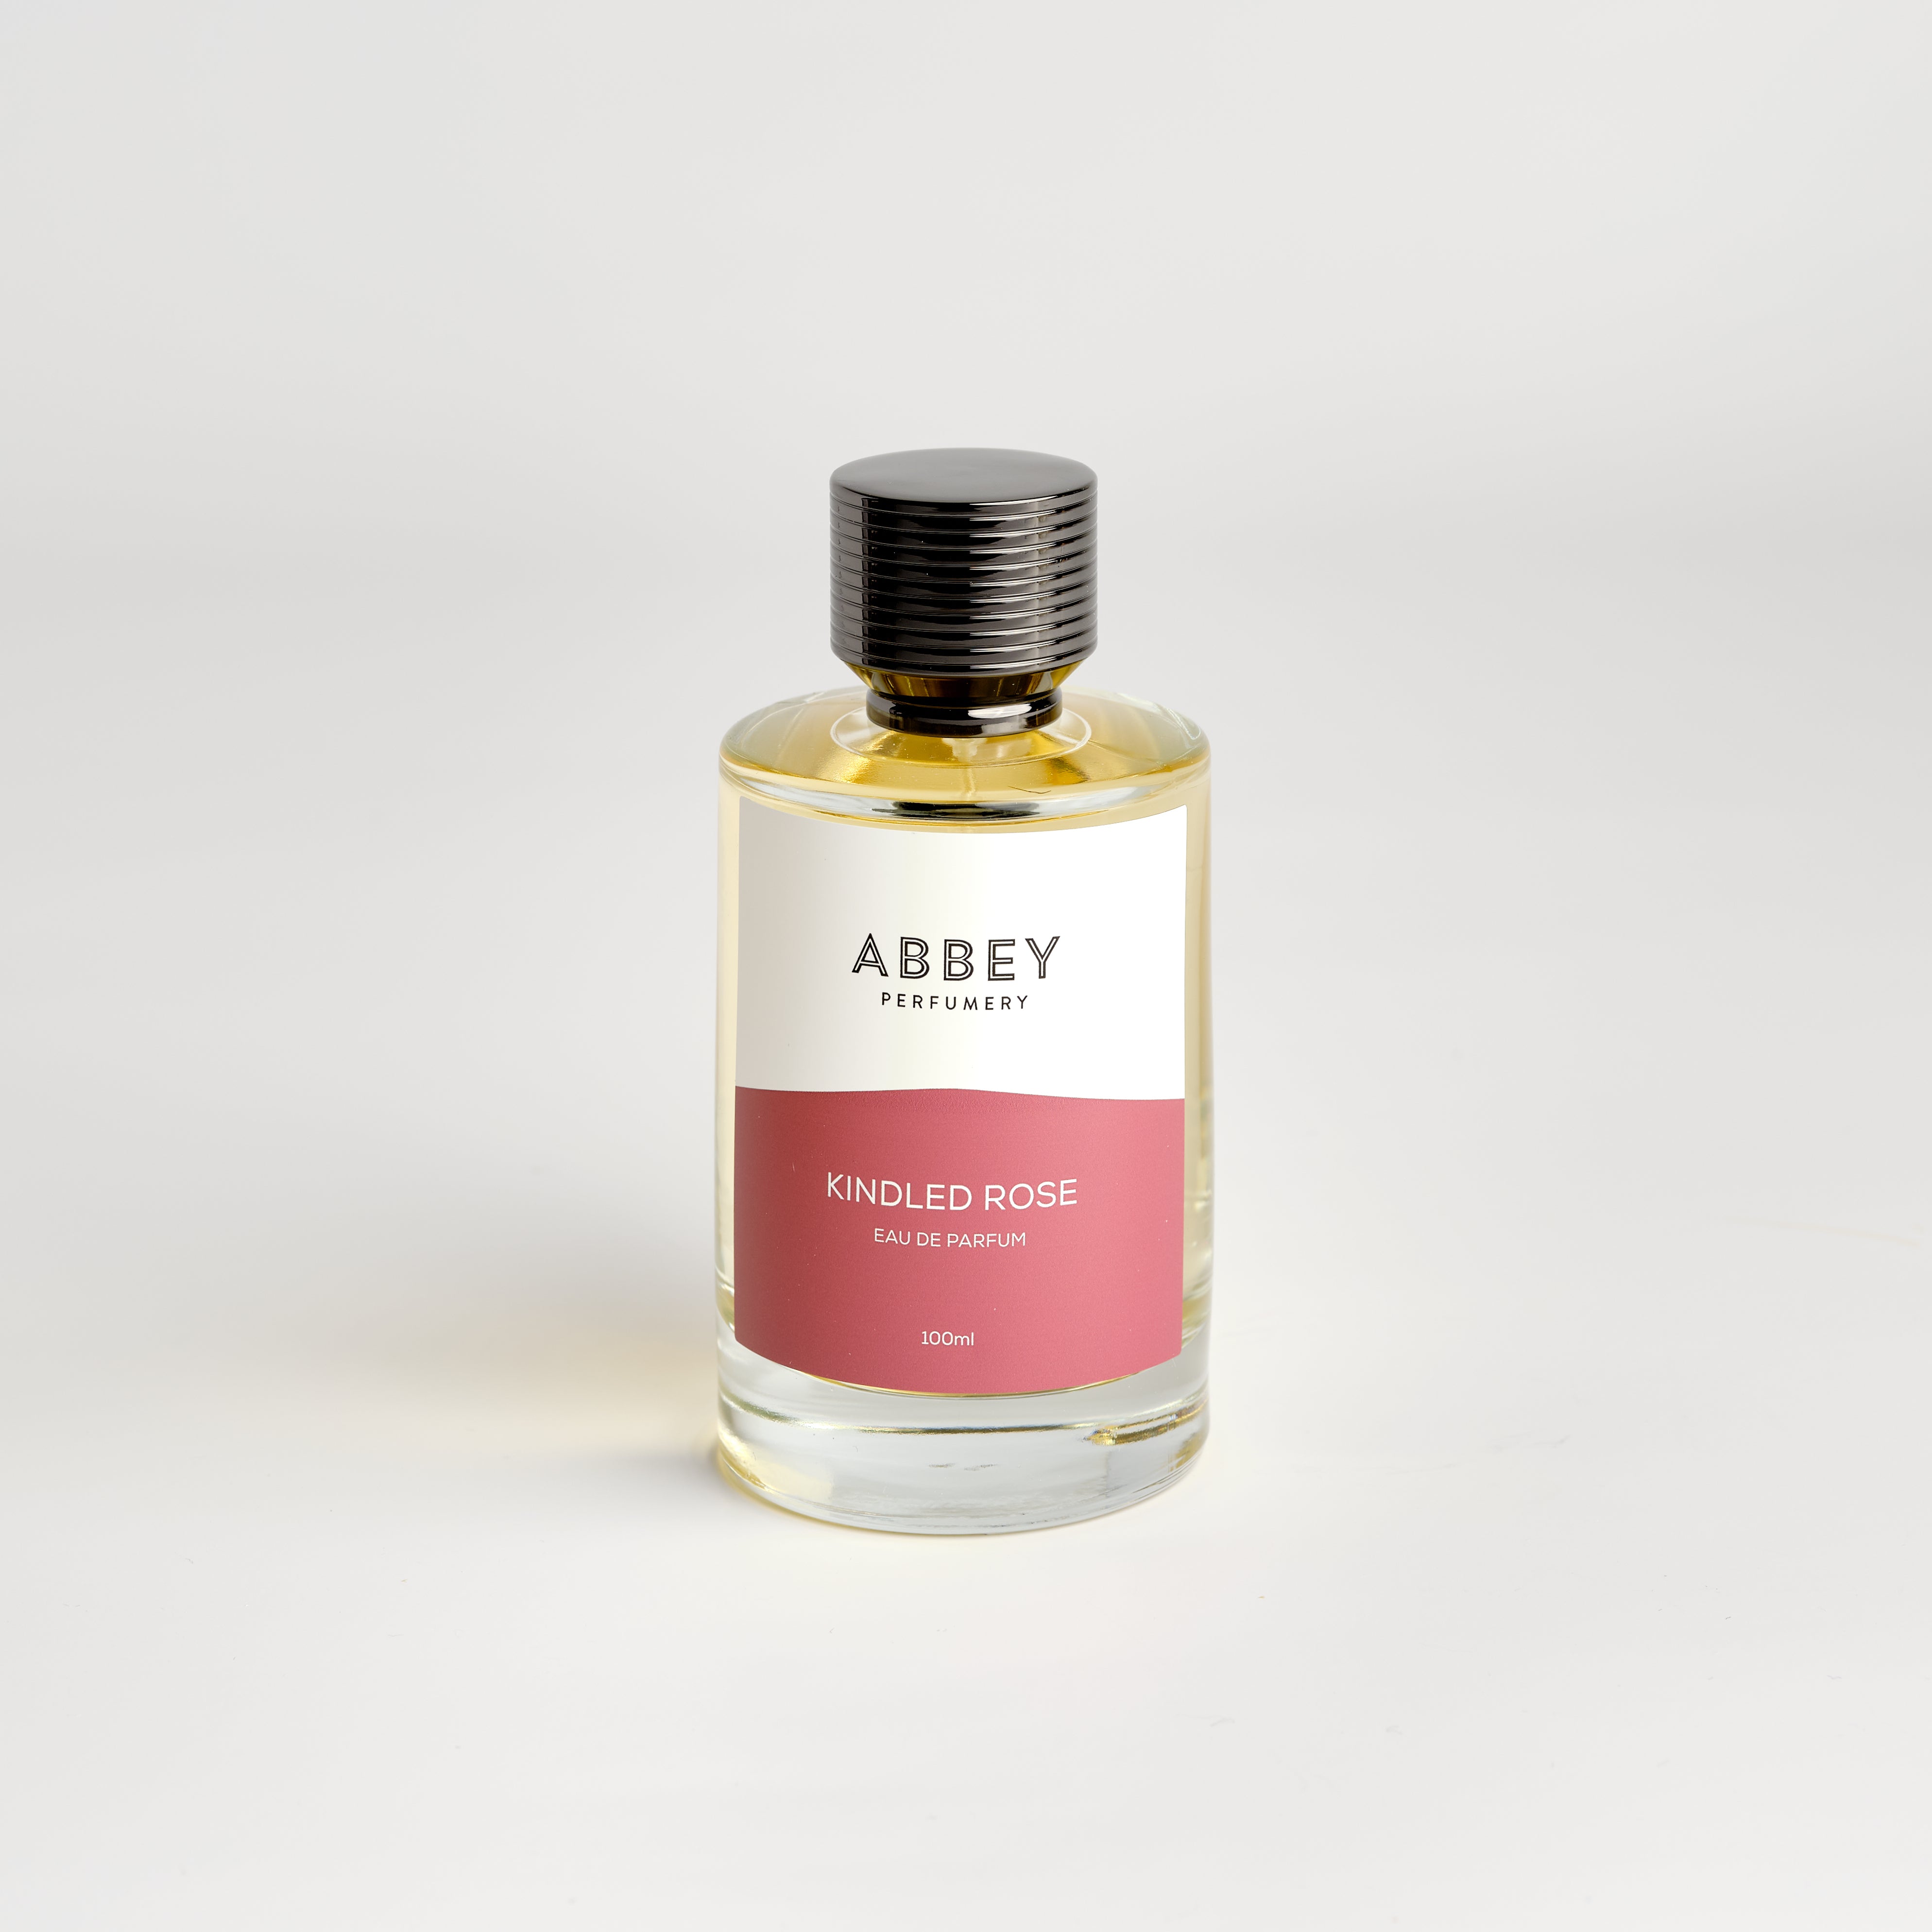 Kindled Rose perfume bottle 100ml on white background